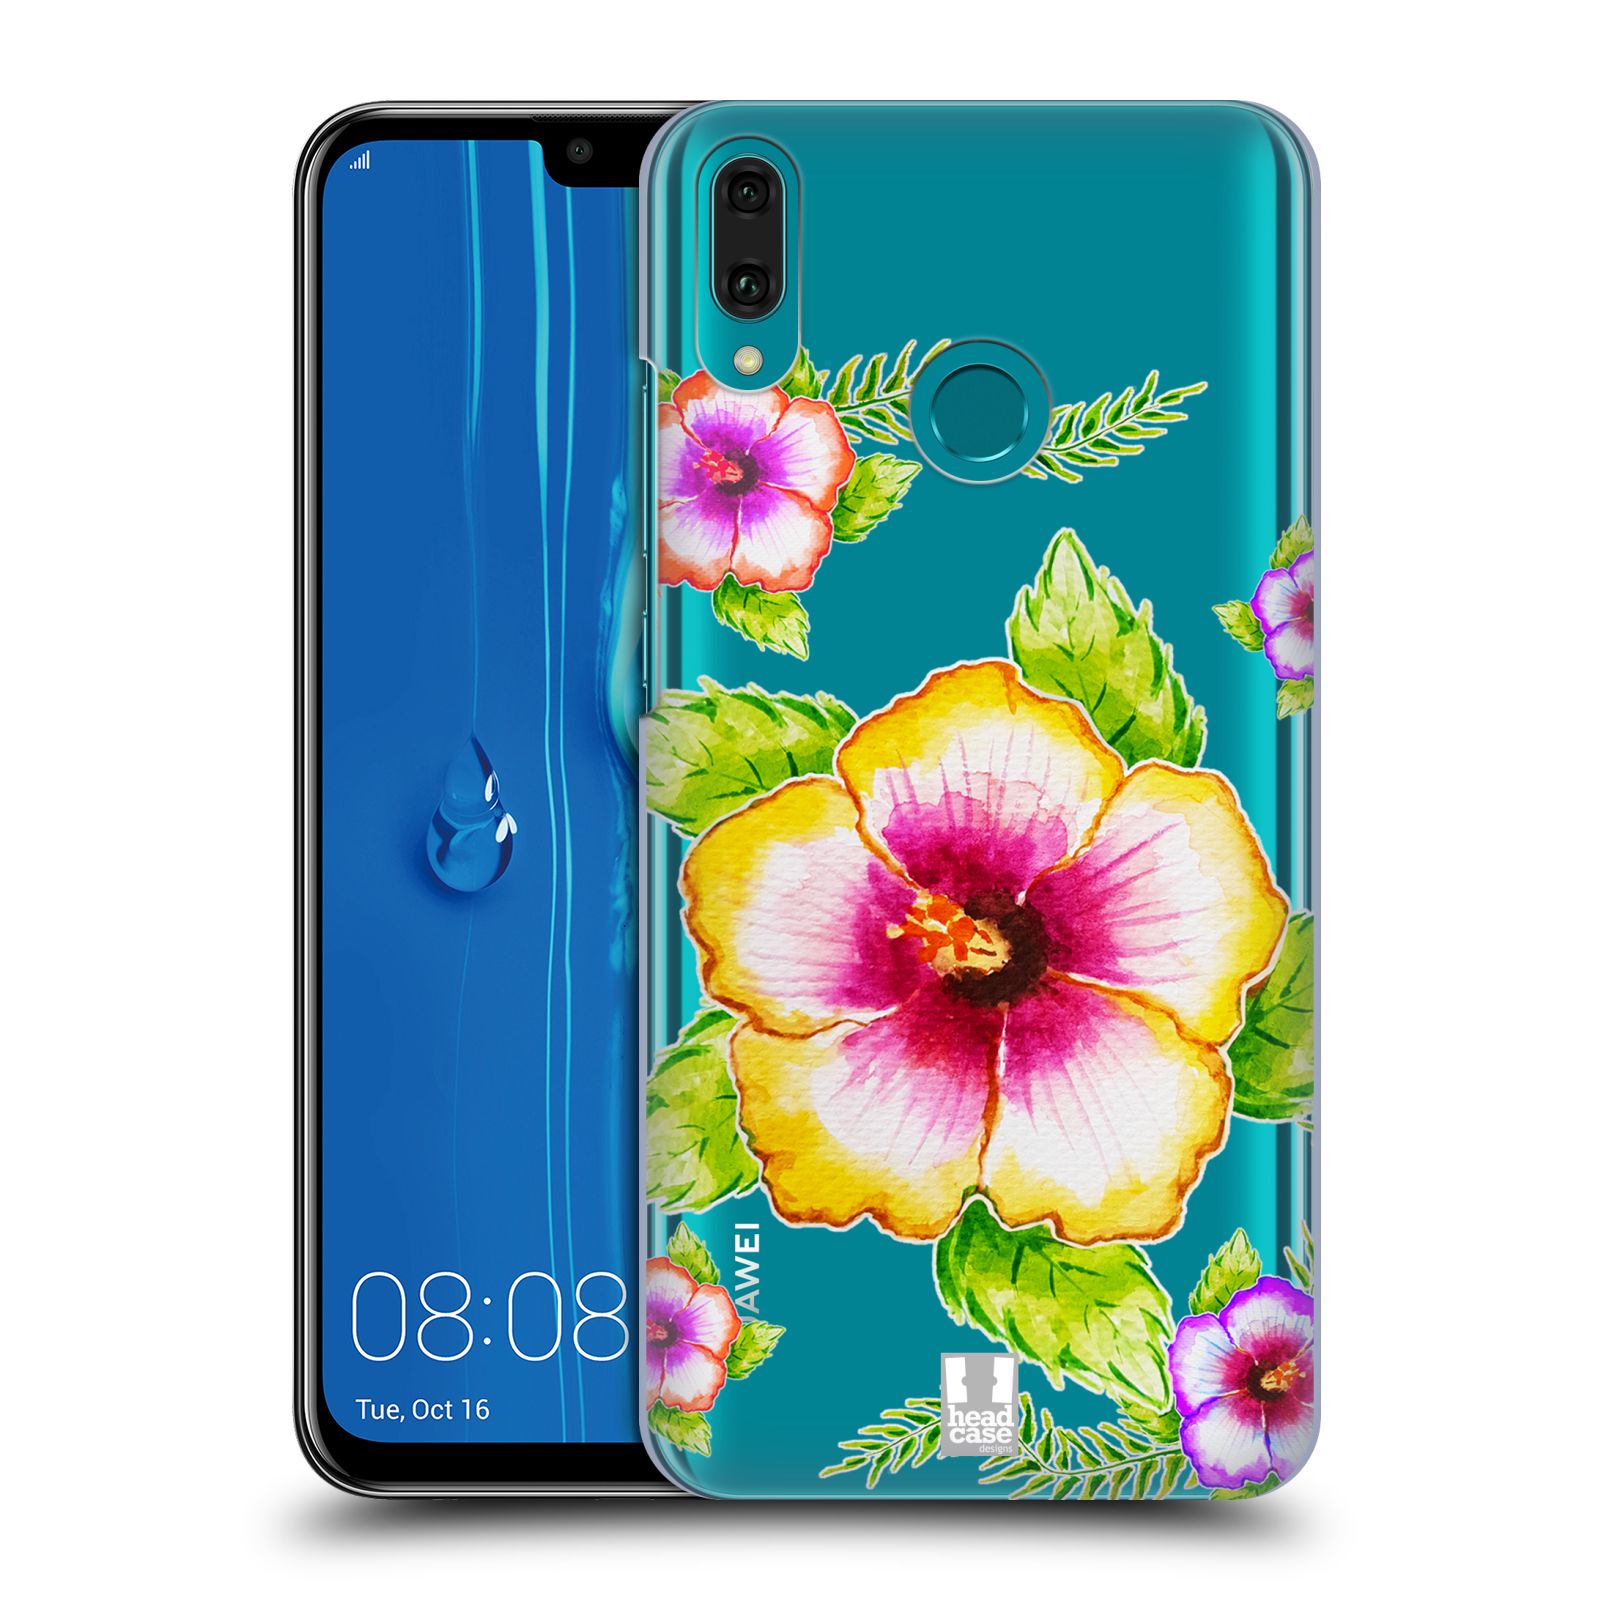 Pouzdro na mobil Huawei Y9 2019 - HEAD CASE - Květina Ibišek vodní barvy